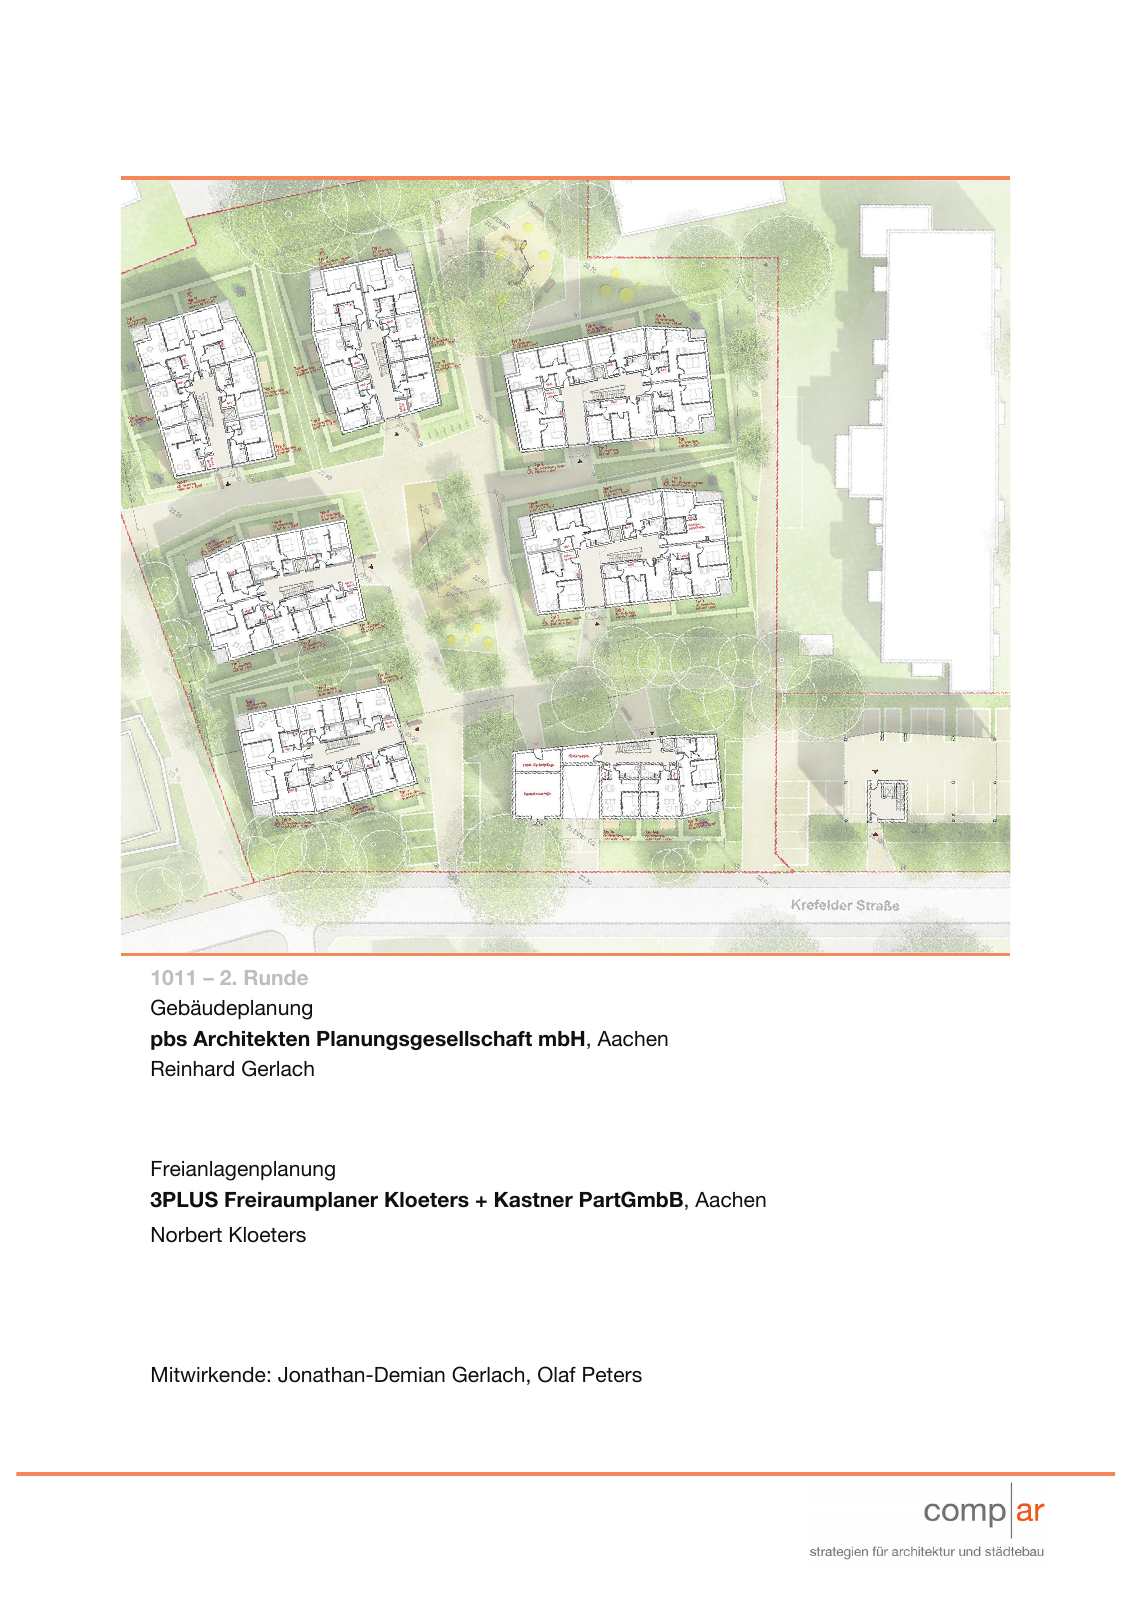 Vorschau Neubau von 100 Wohneinheiten [Nordhorn] Seite 69